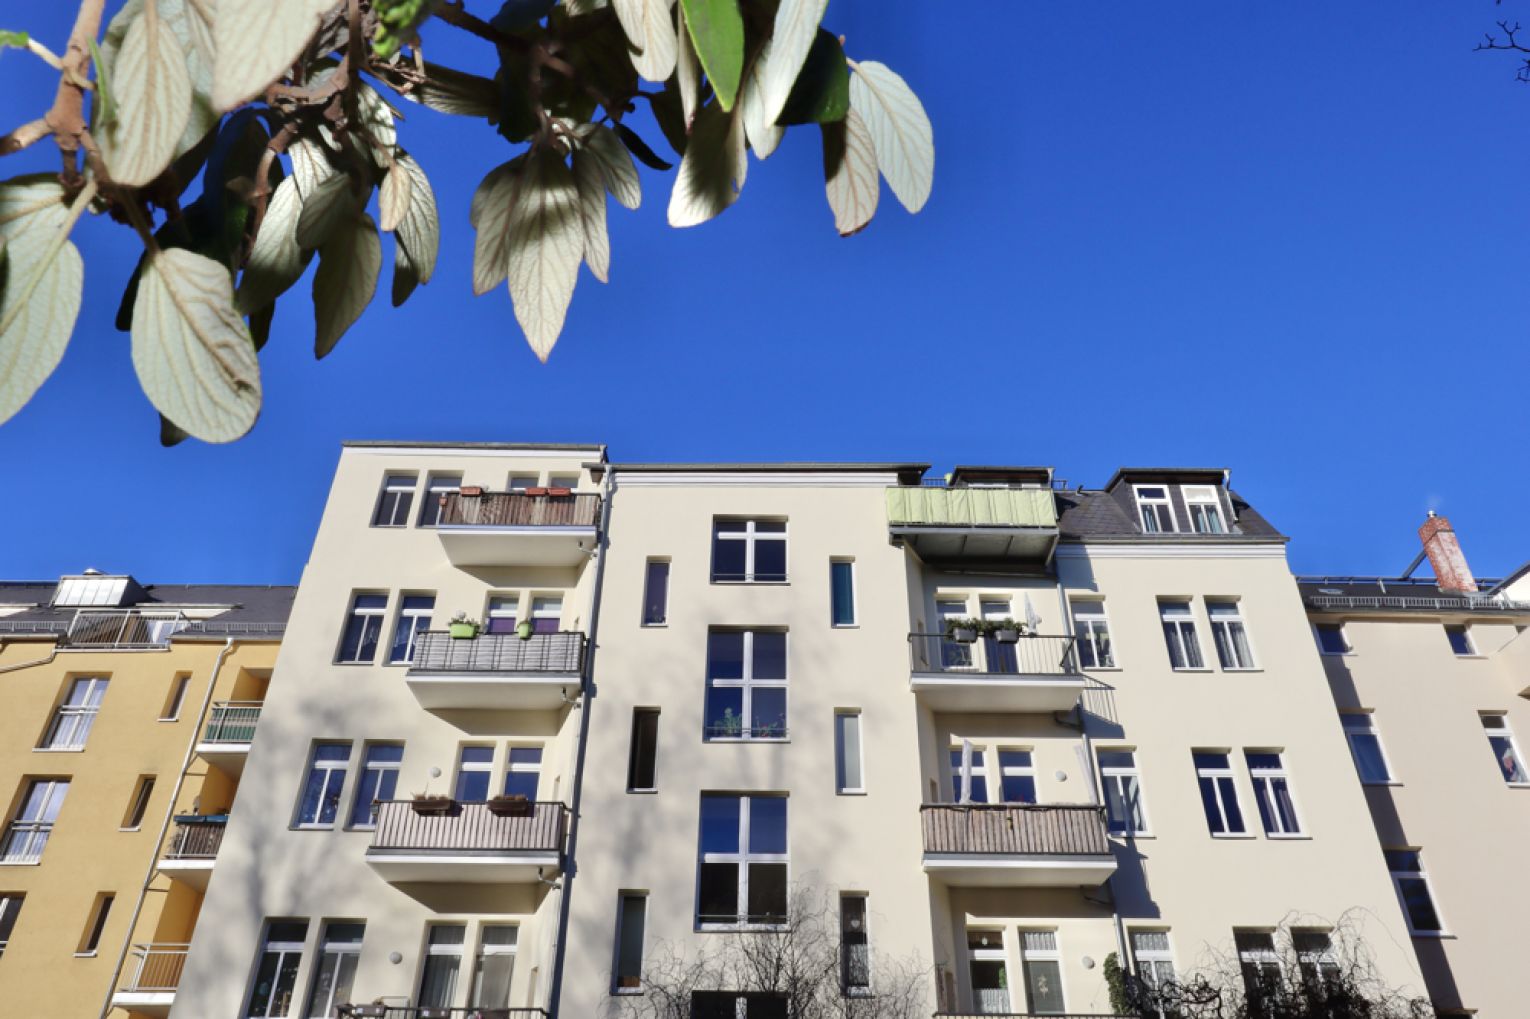 Maisonettenwohnung • zum Kauf • 4-Raum Wohnung • Balkon • 2 Bäder • Kaßberg • Dachterrasse